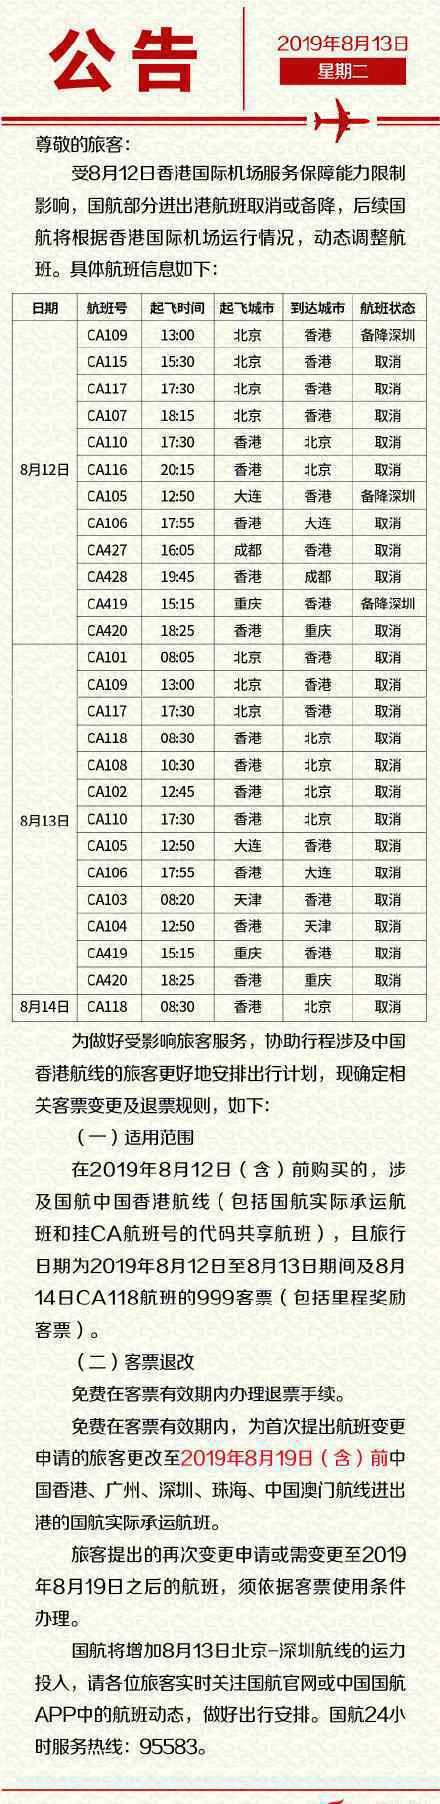 六航企公布香港机票处置方案 具体是什么方案